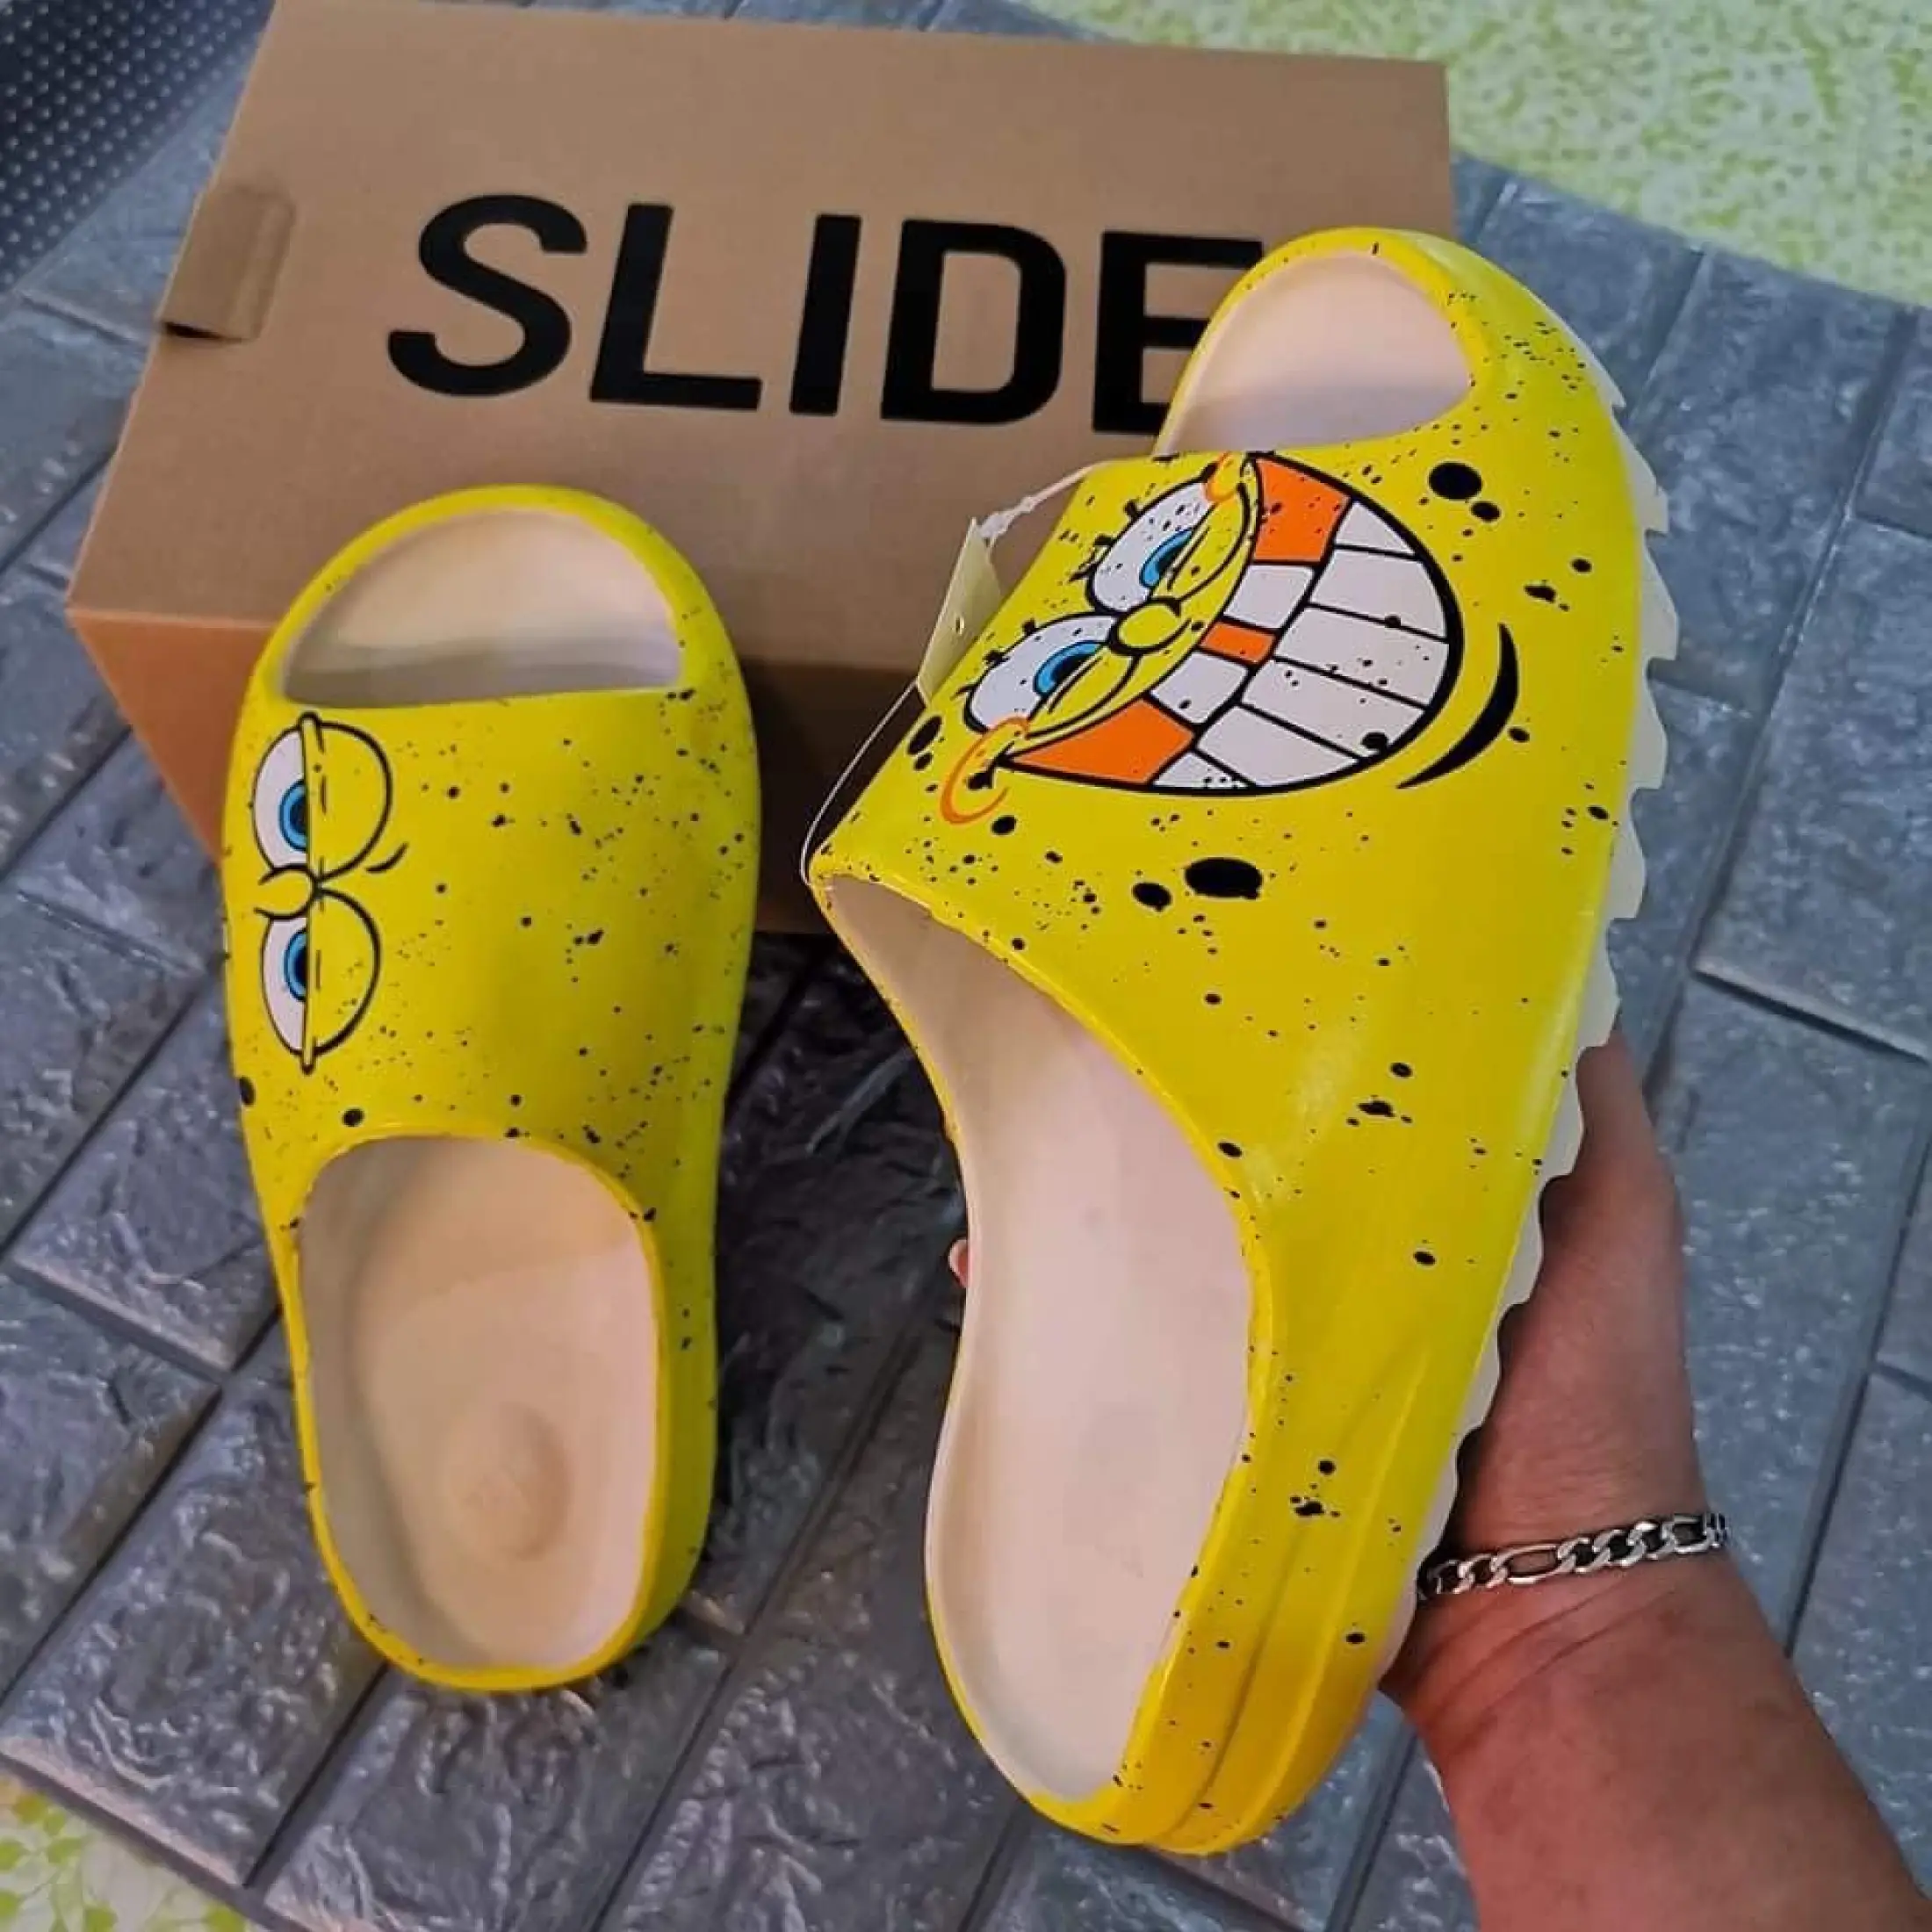 yeezy spongebob shoes